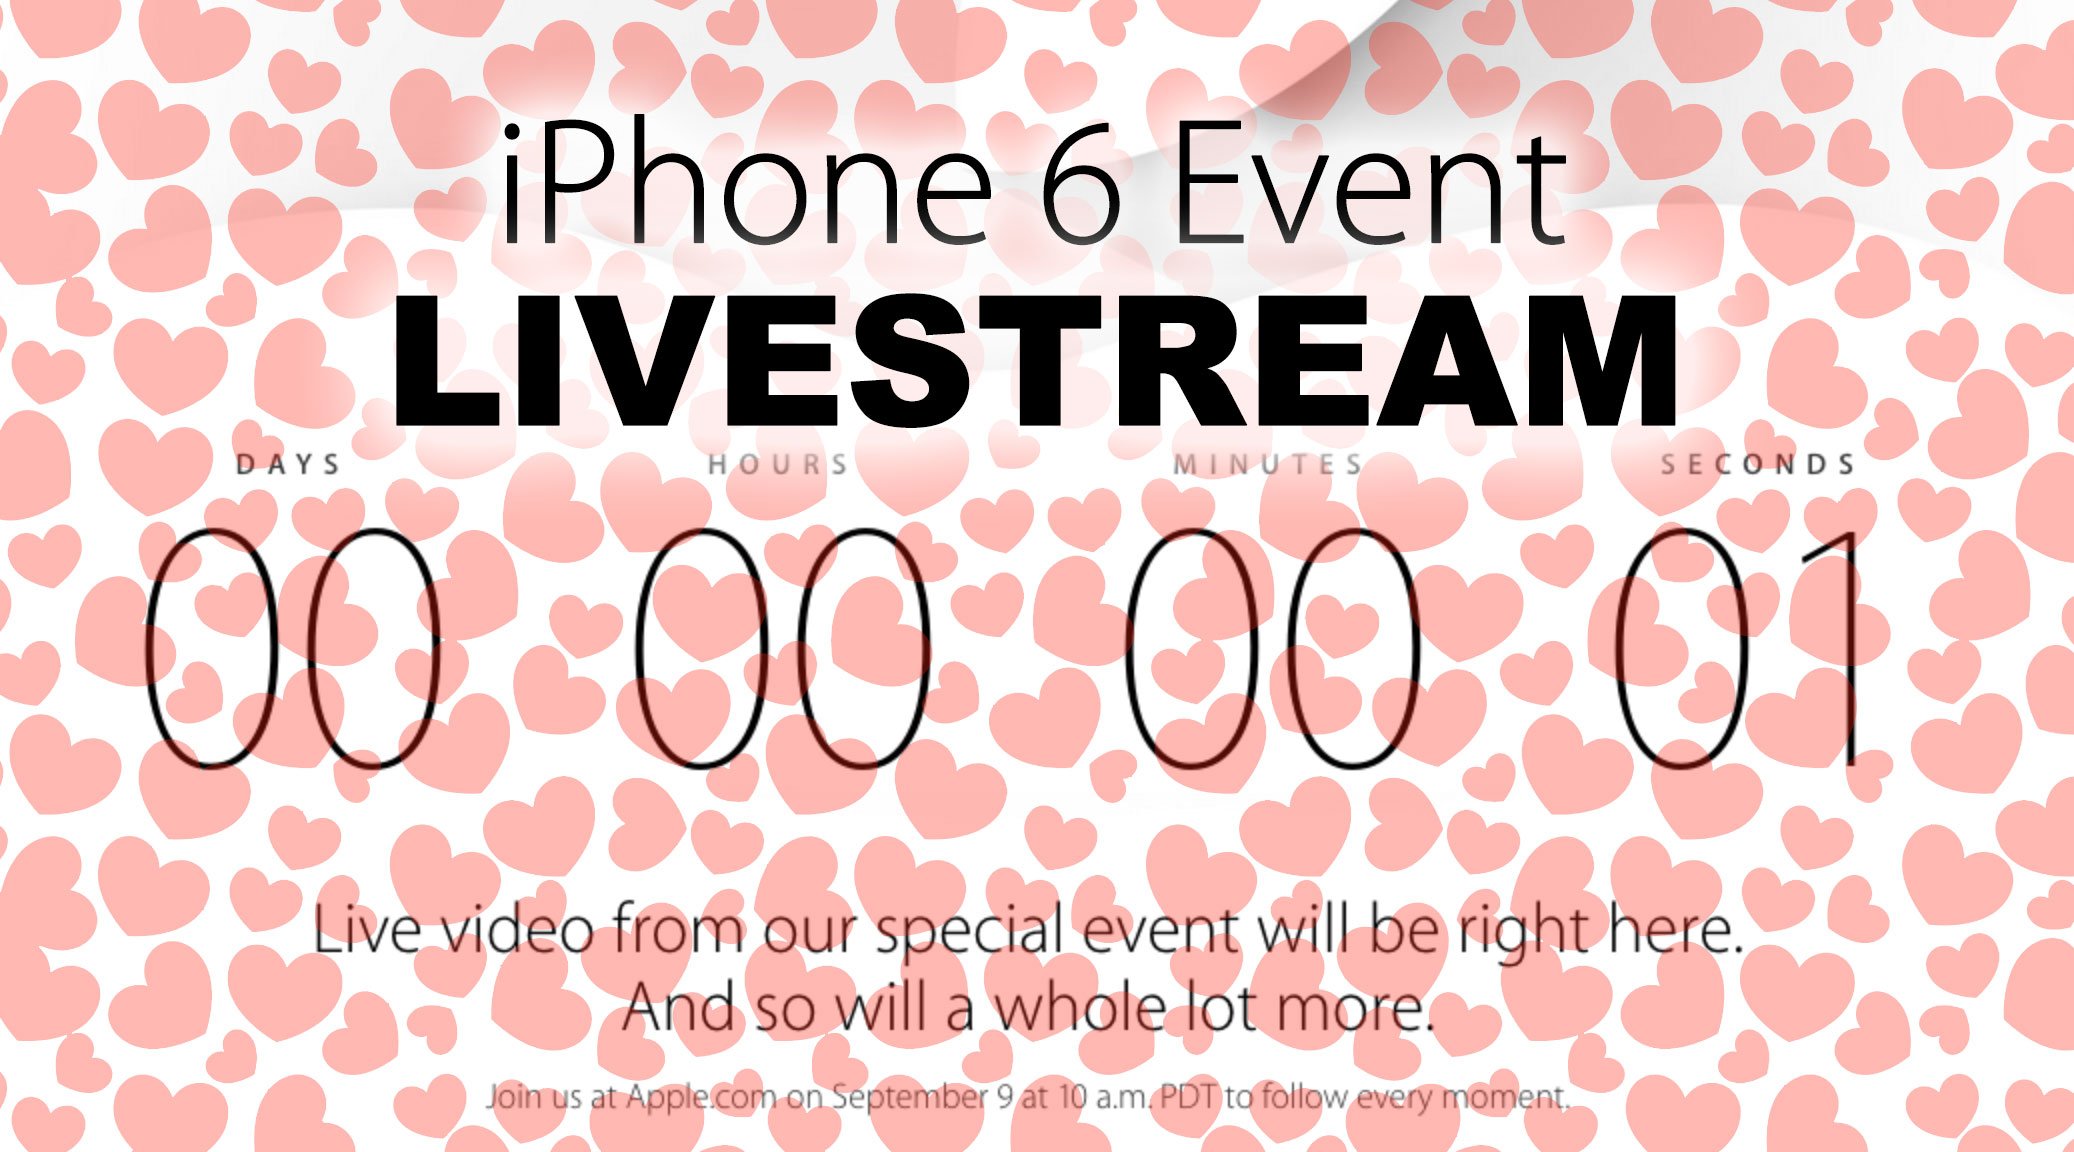 Livestream iPhone 6 Event: Apple kündigt Video Live-Stream an! 1